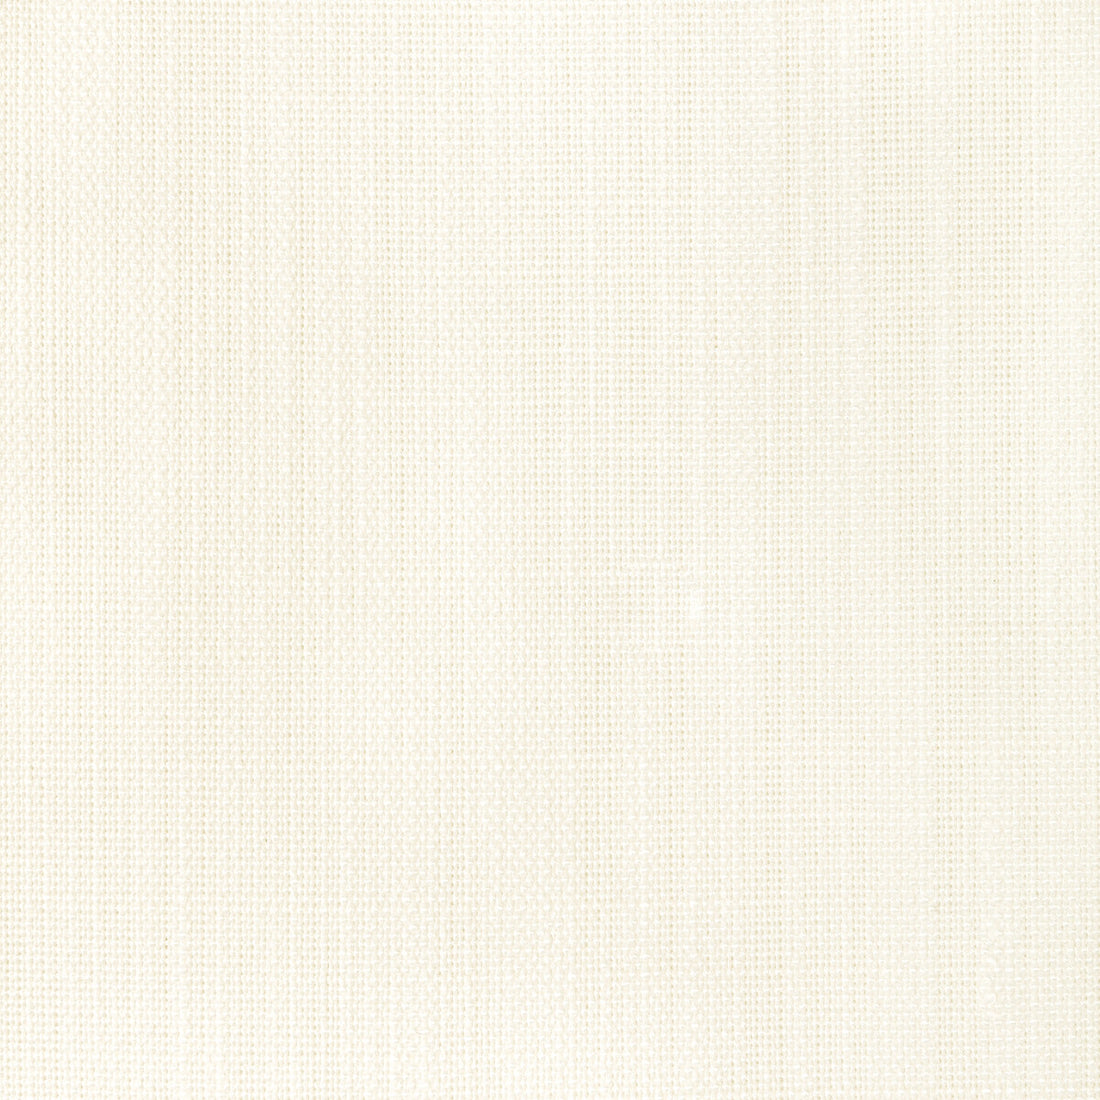 Kravet Basics fabric in 35997-1 color - pattern 35997.1.0 - by Kravet Basics